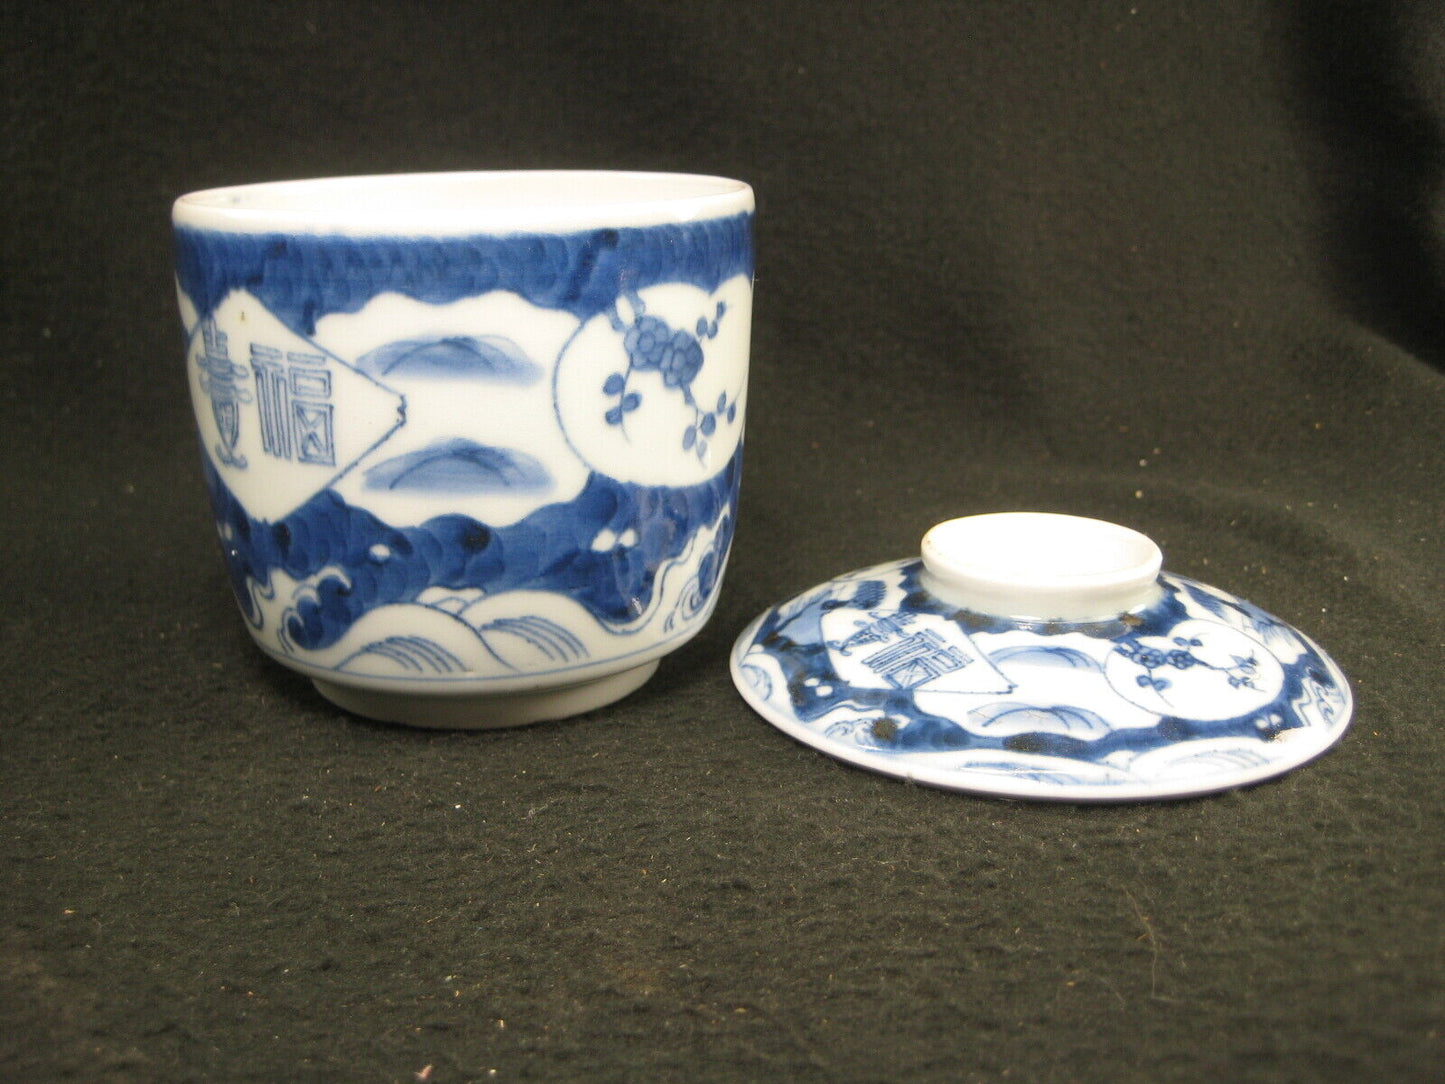 Antique Japanese Meiji Era C. 1880 Imari Ceramic Sencha Lidded Tea Cup Scenic